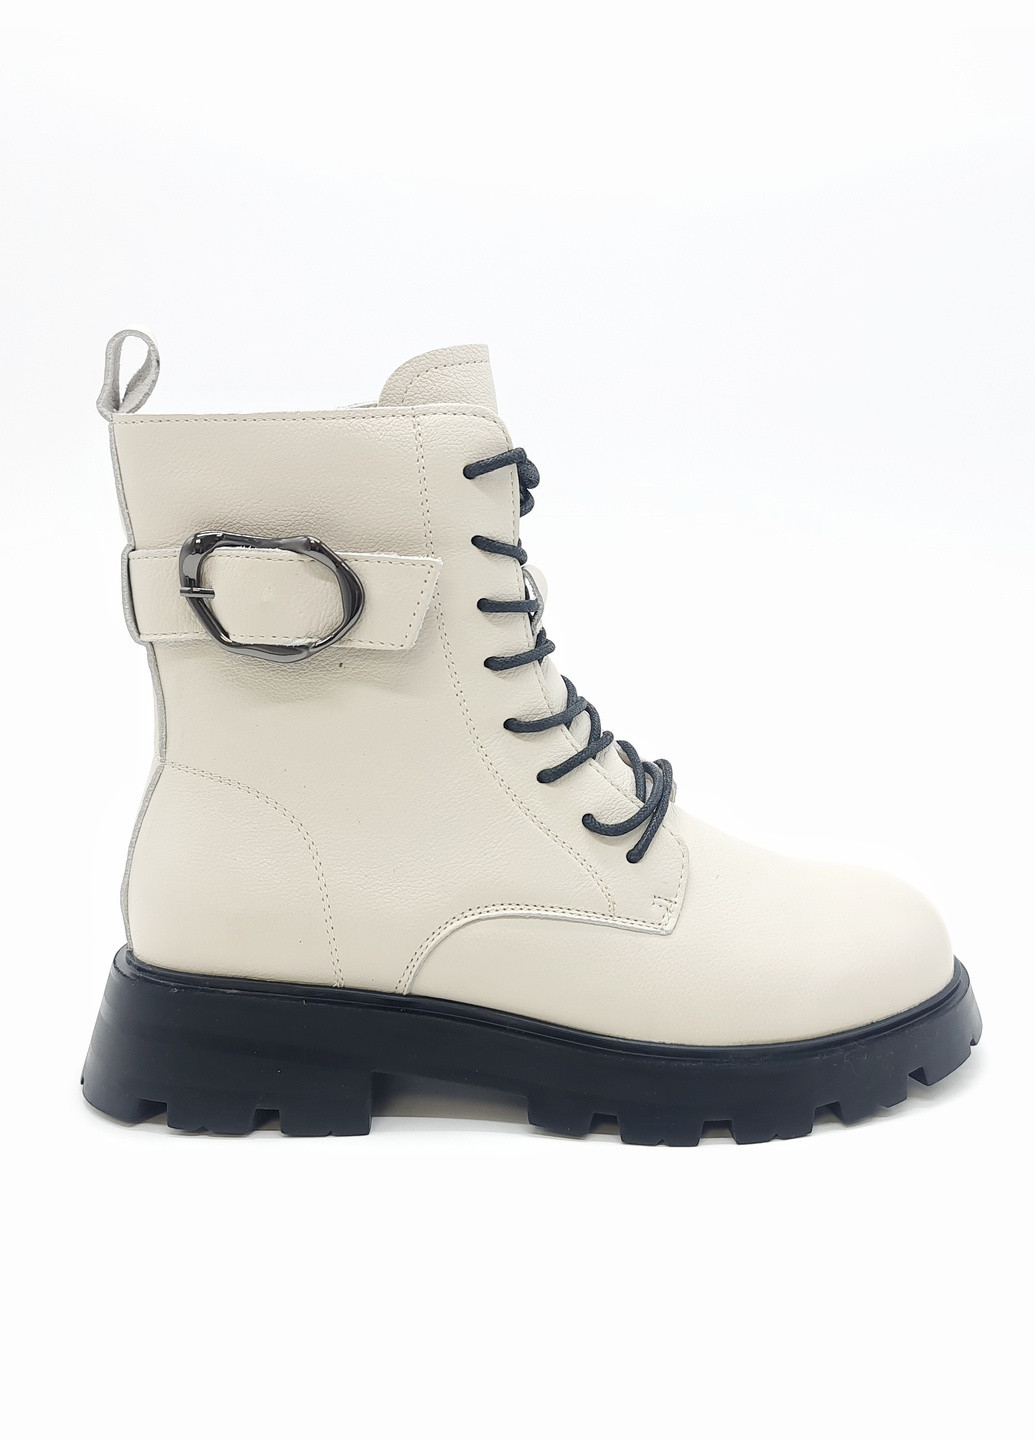 Осенние женские ботинки белые кожаные bv-13-5 23,5 см (р) Boss Victori